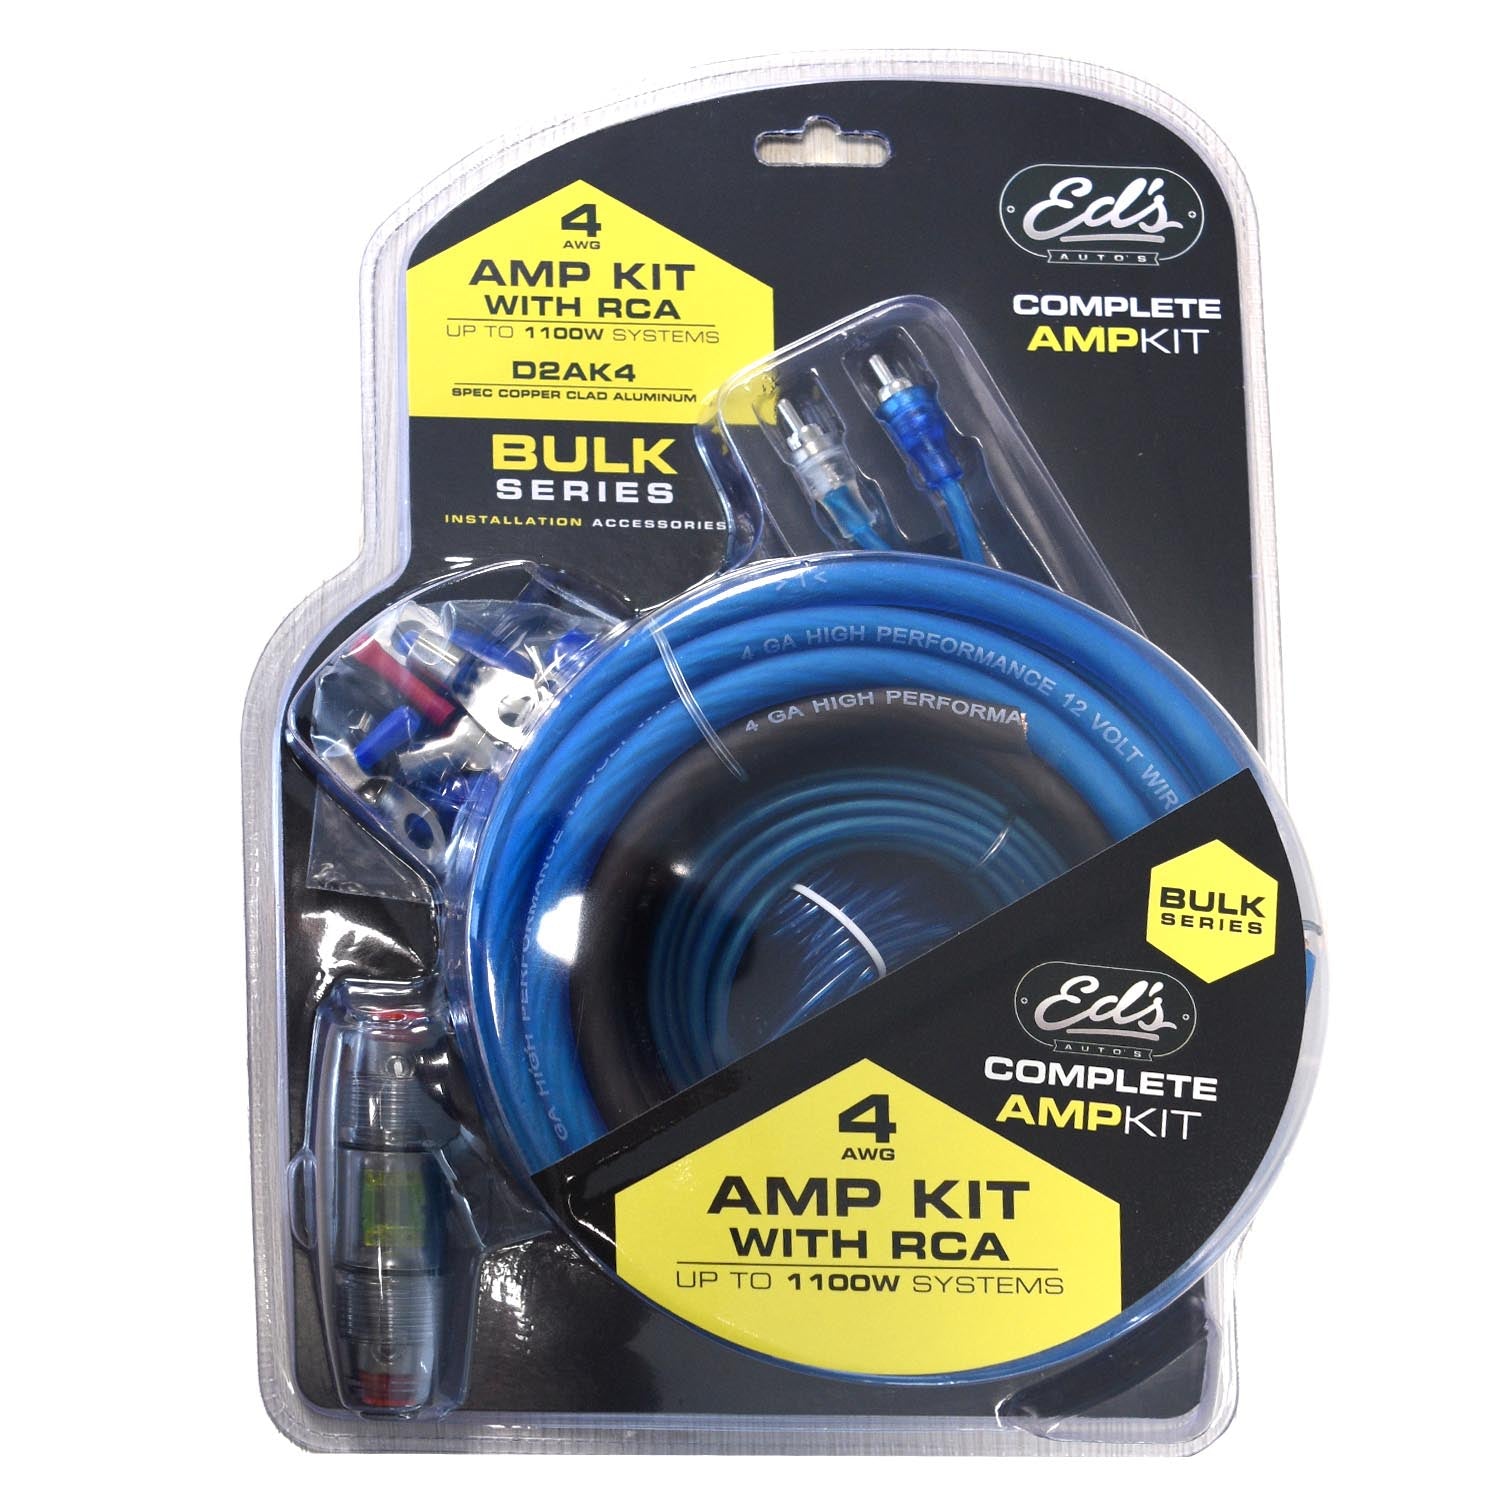 Eds Amp Kit 4Ga - R2 Anl Car Stereo Kit For Amplifier